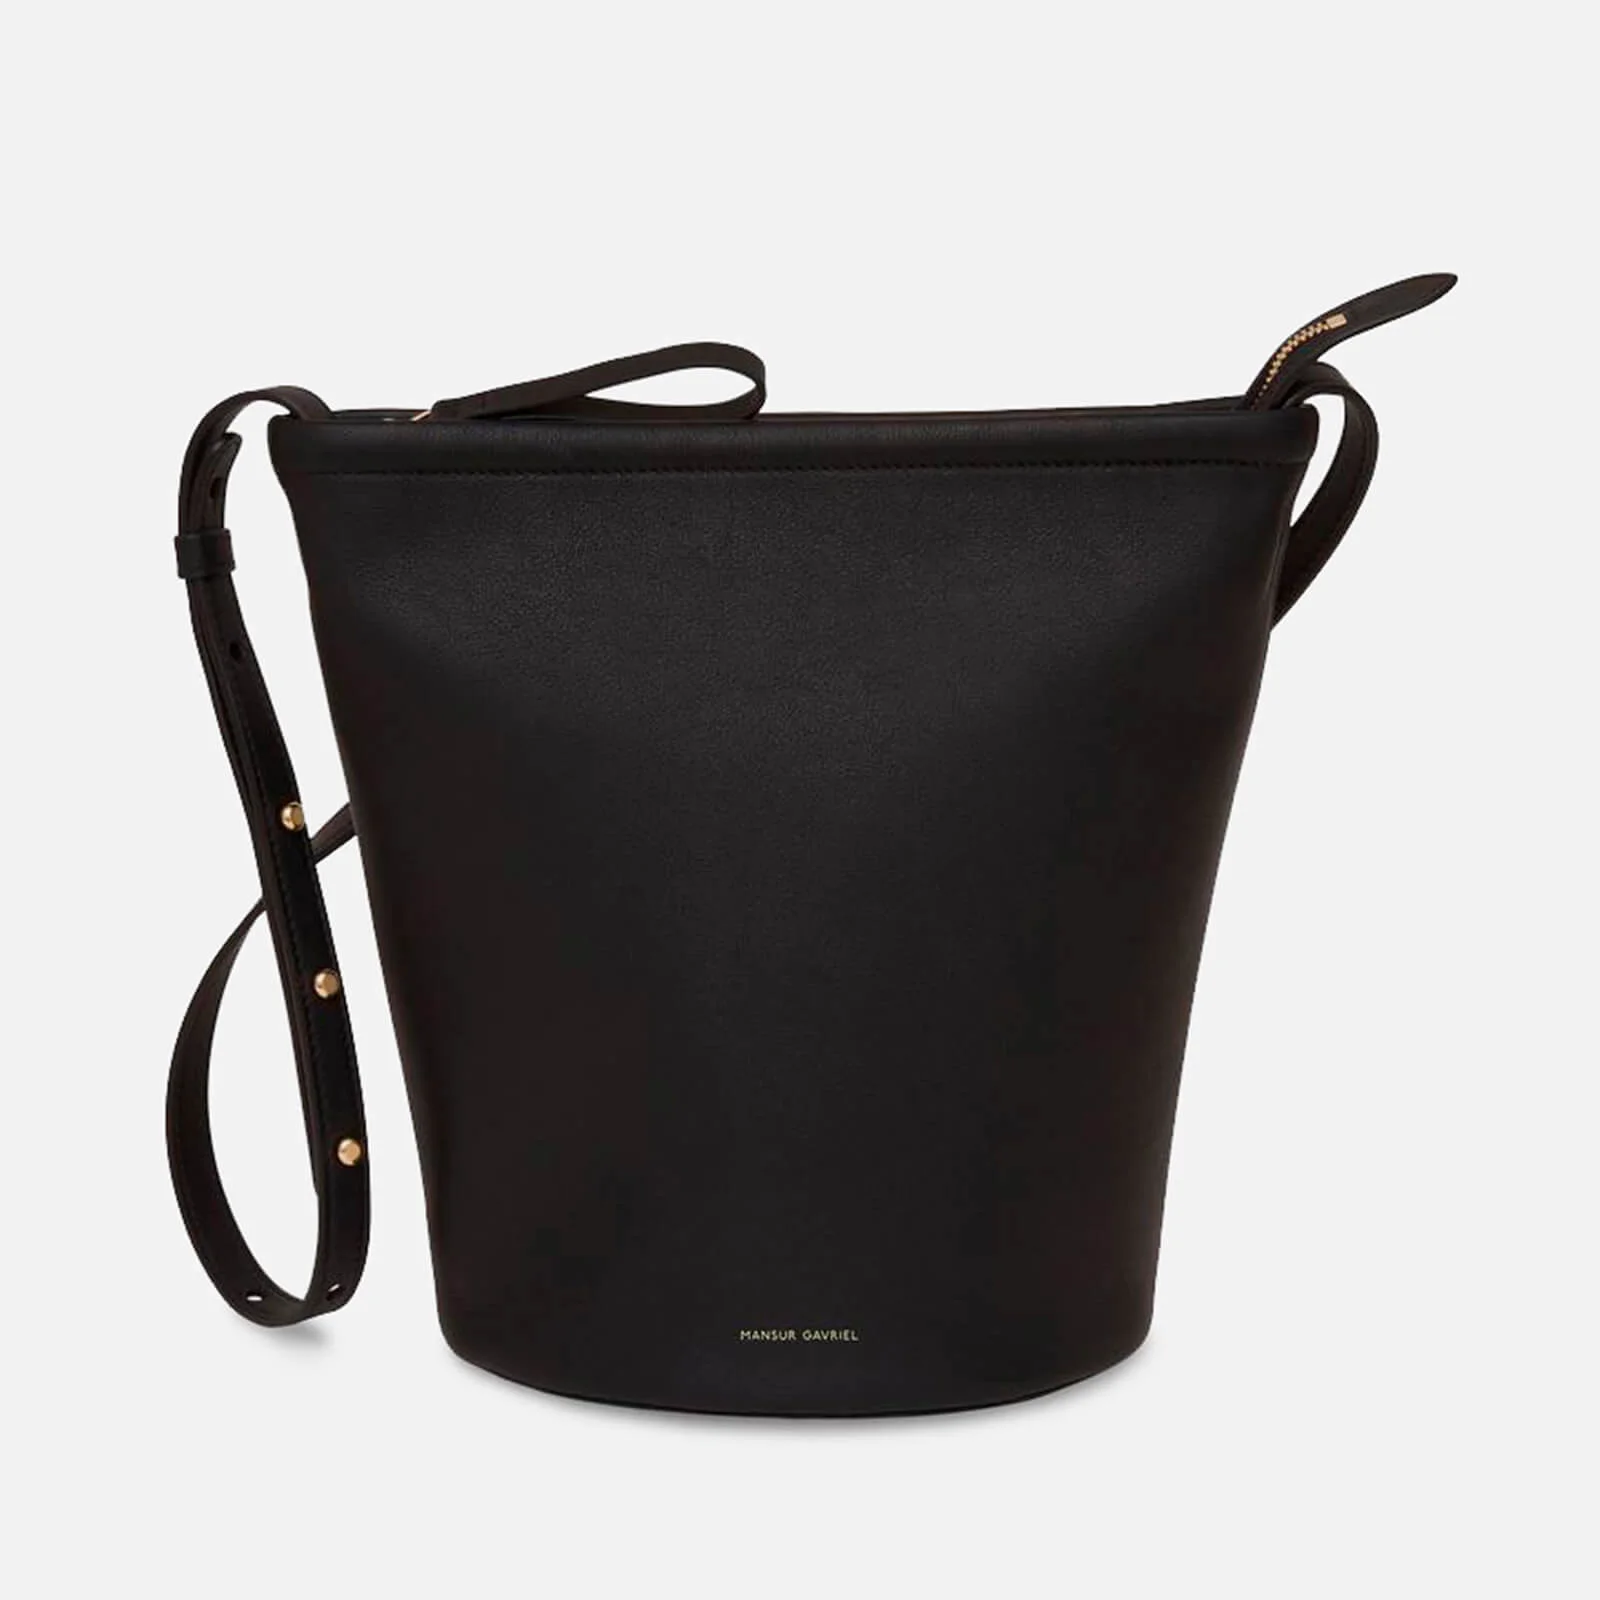 Mansur Gavriel Women's Zip Bucket Bag - Black Image 1